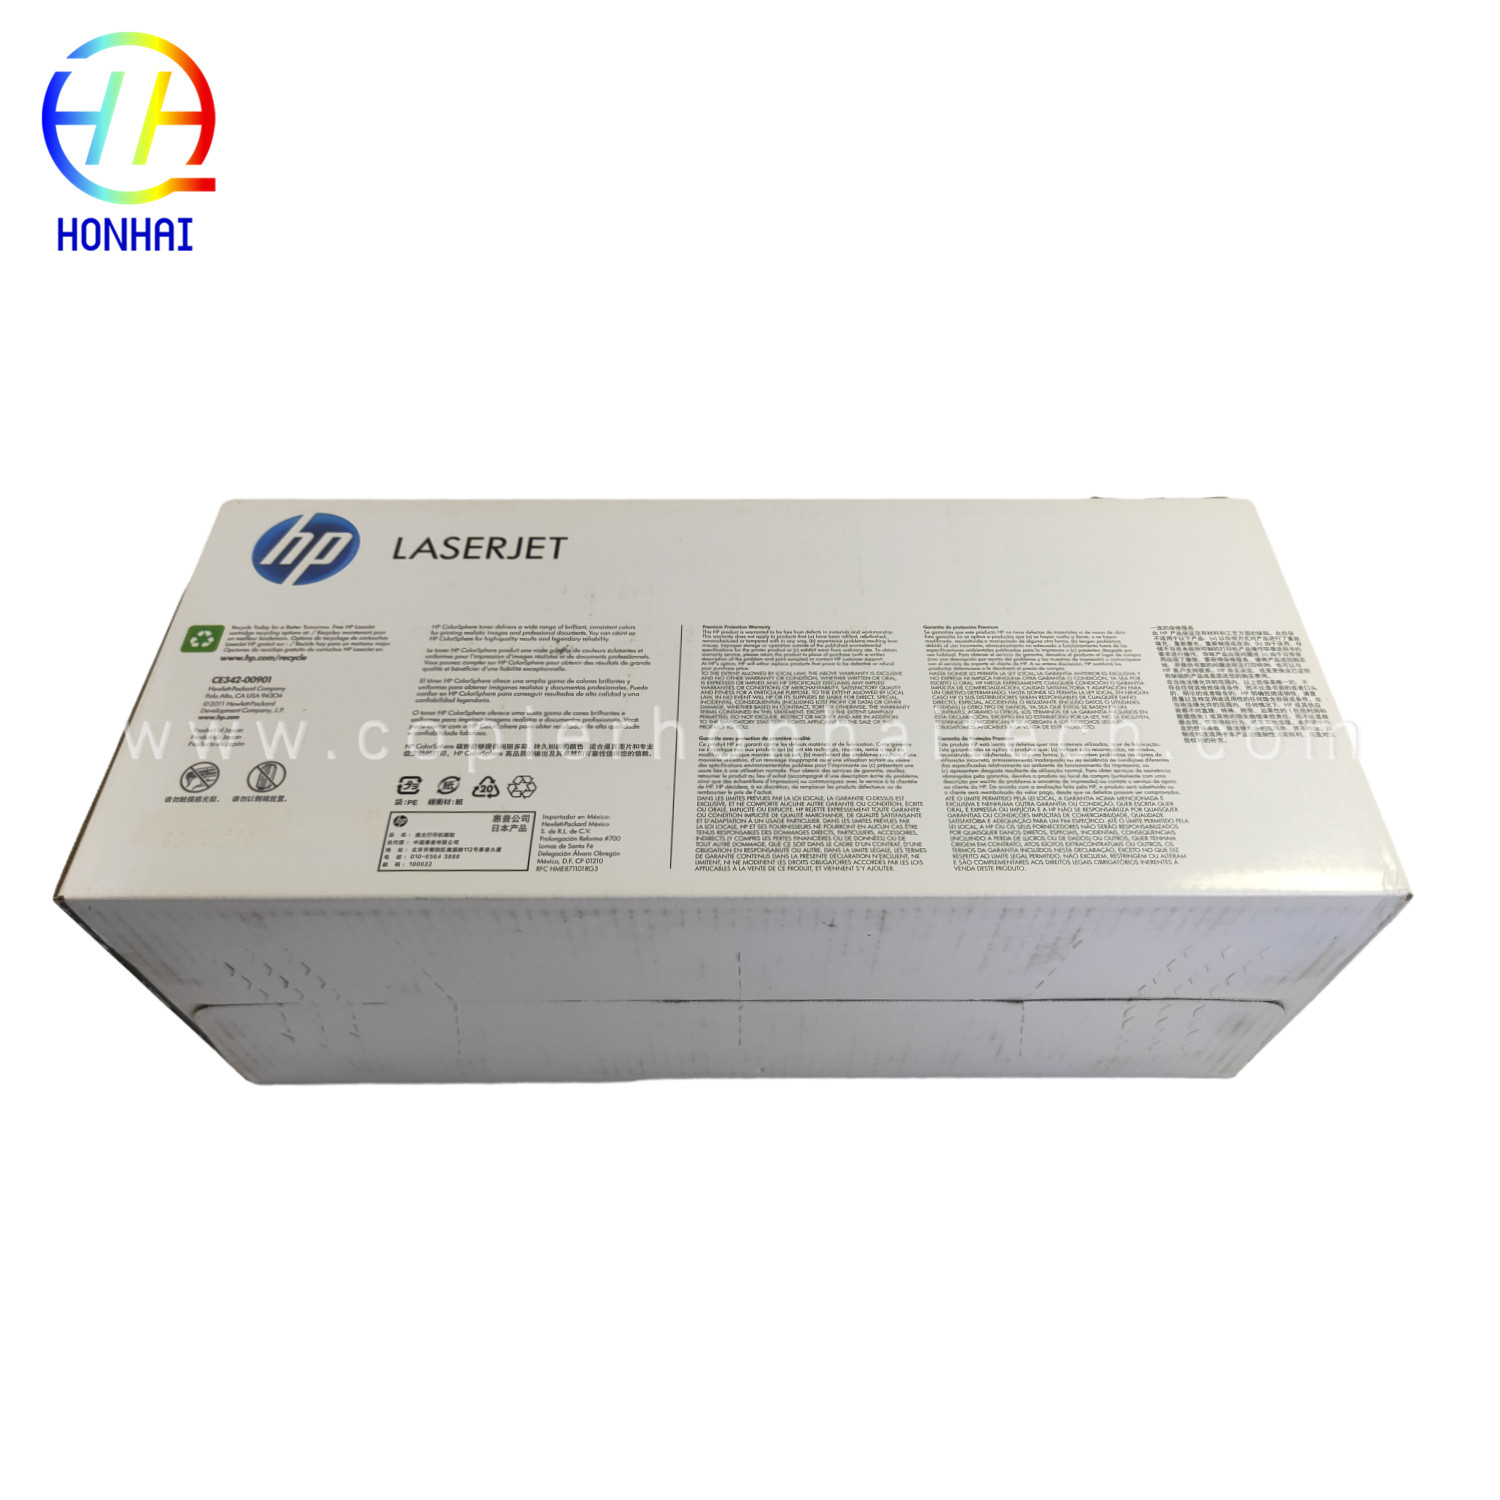 https://www.copierhonhaitech.com/original-toner-cartridge-for-hp-laserjet-enterprise-700-color-mfp-m775-series-651a-ce341a-chan-ce342ac- yellow-16000-page-product/